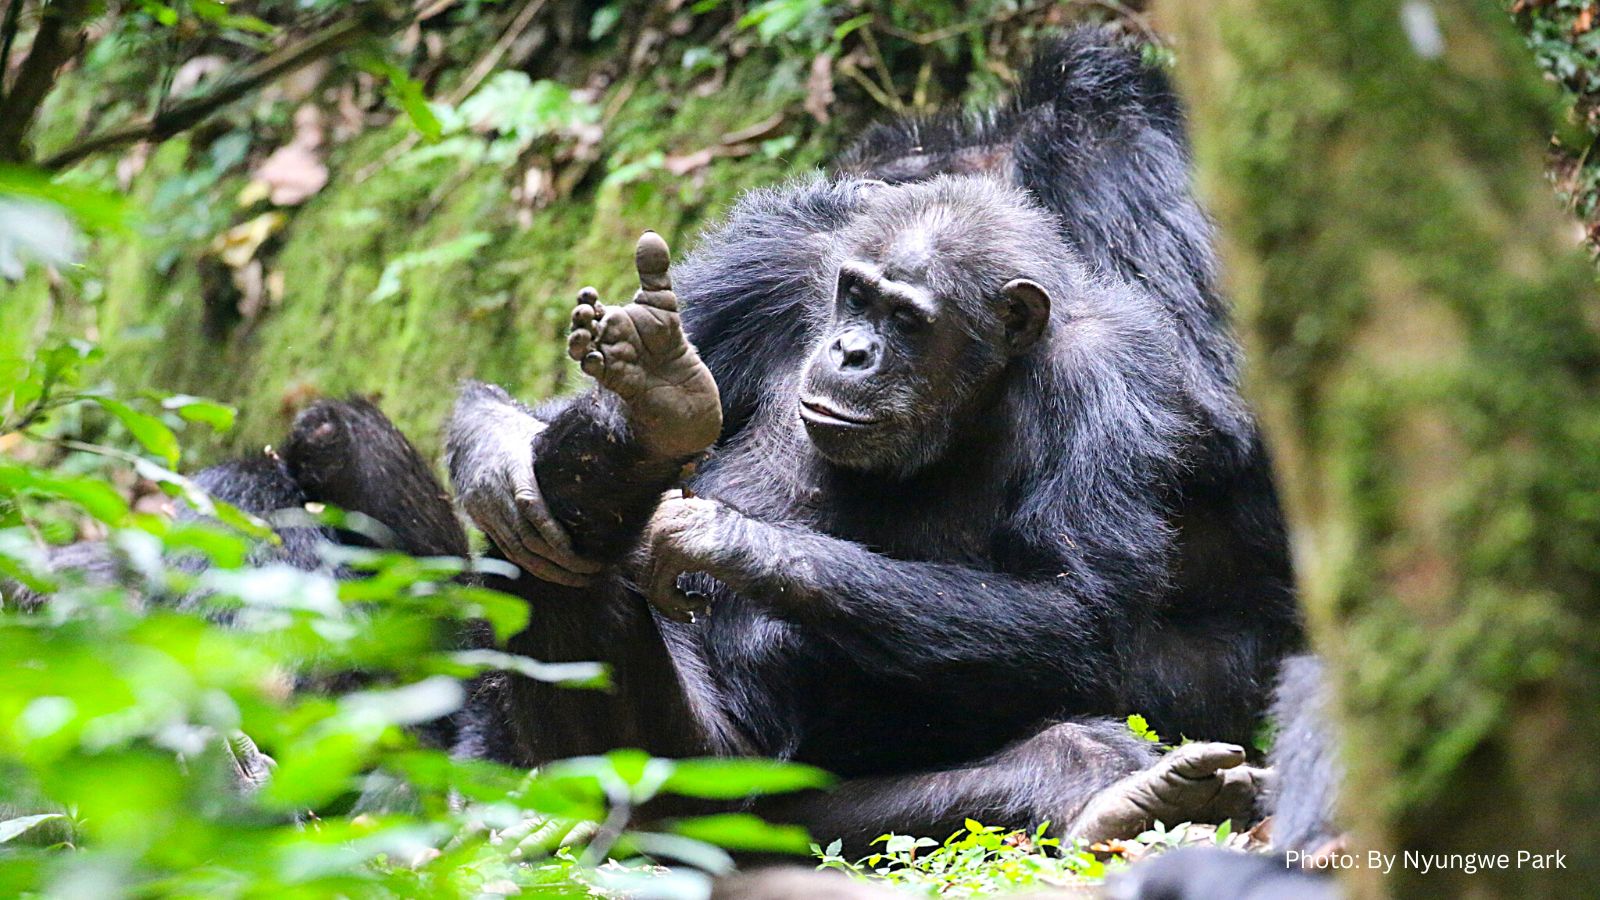 New Chimpanzee Trekking Fees